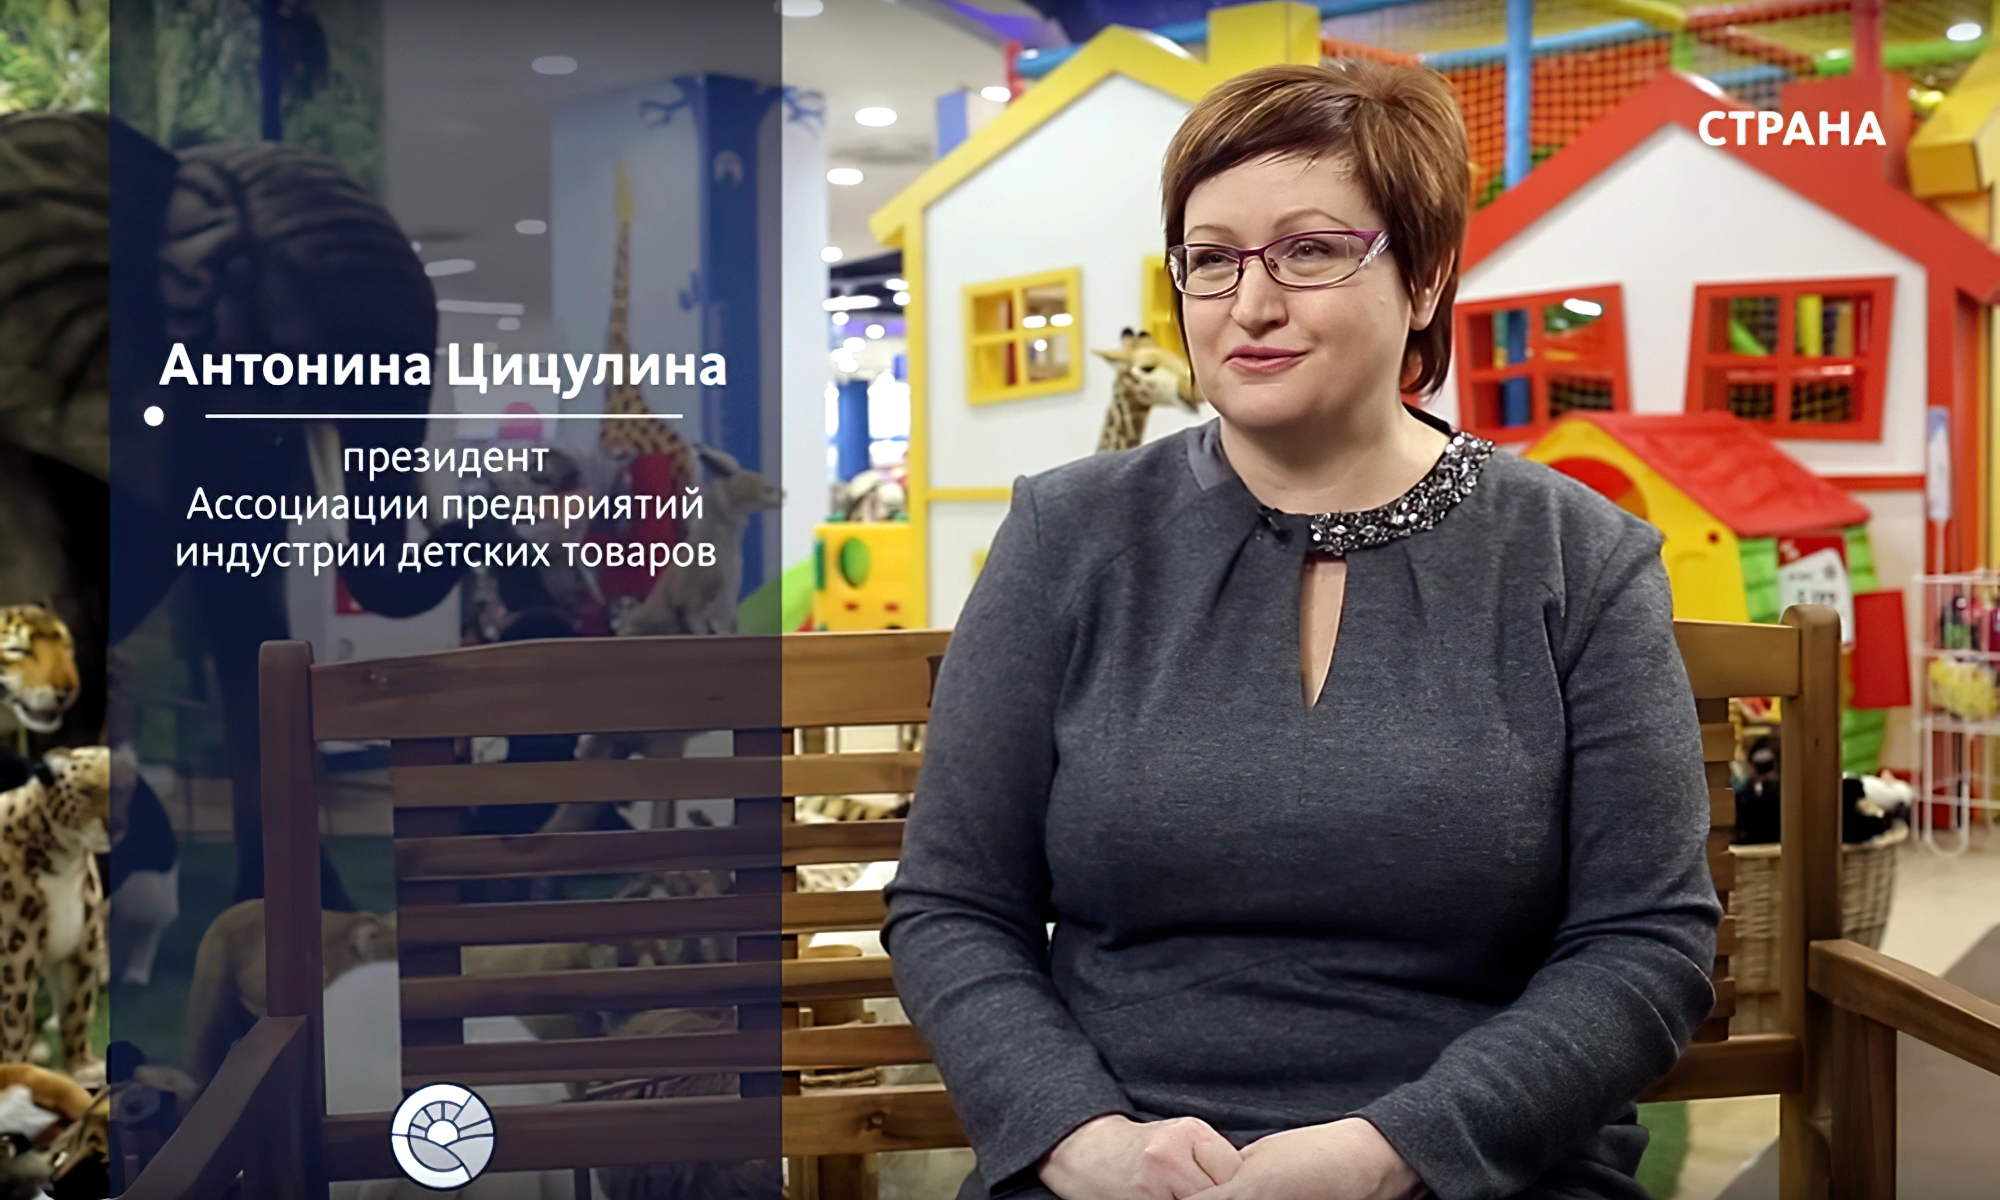 Антонина Цицулина - президент Ассоциации предприятий индустрии детских товаров